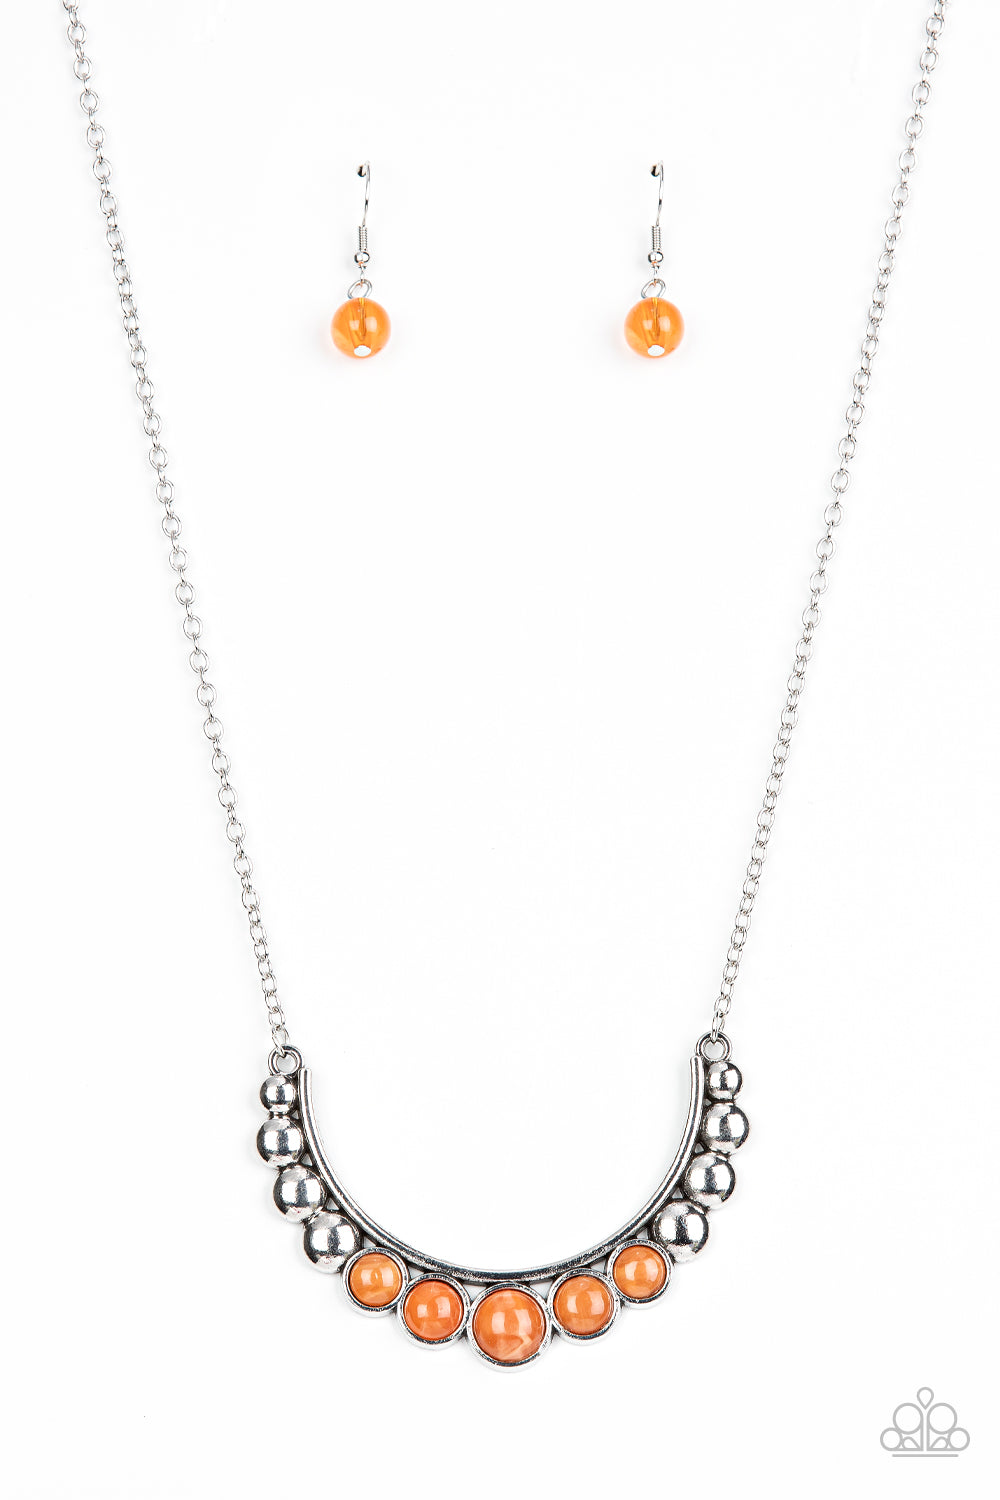 Paparazzi Necklaces - Horseshoe Bend - Orange